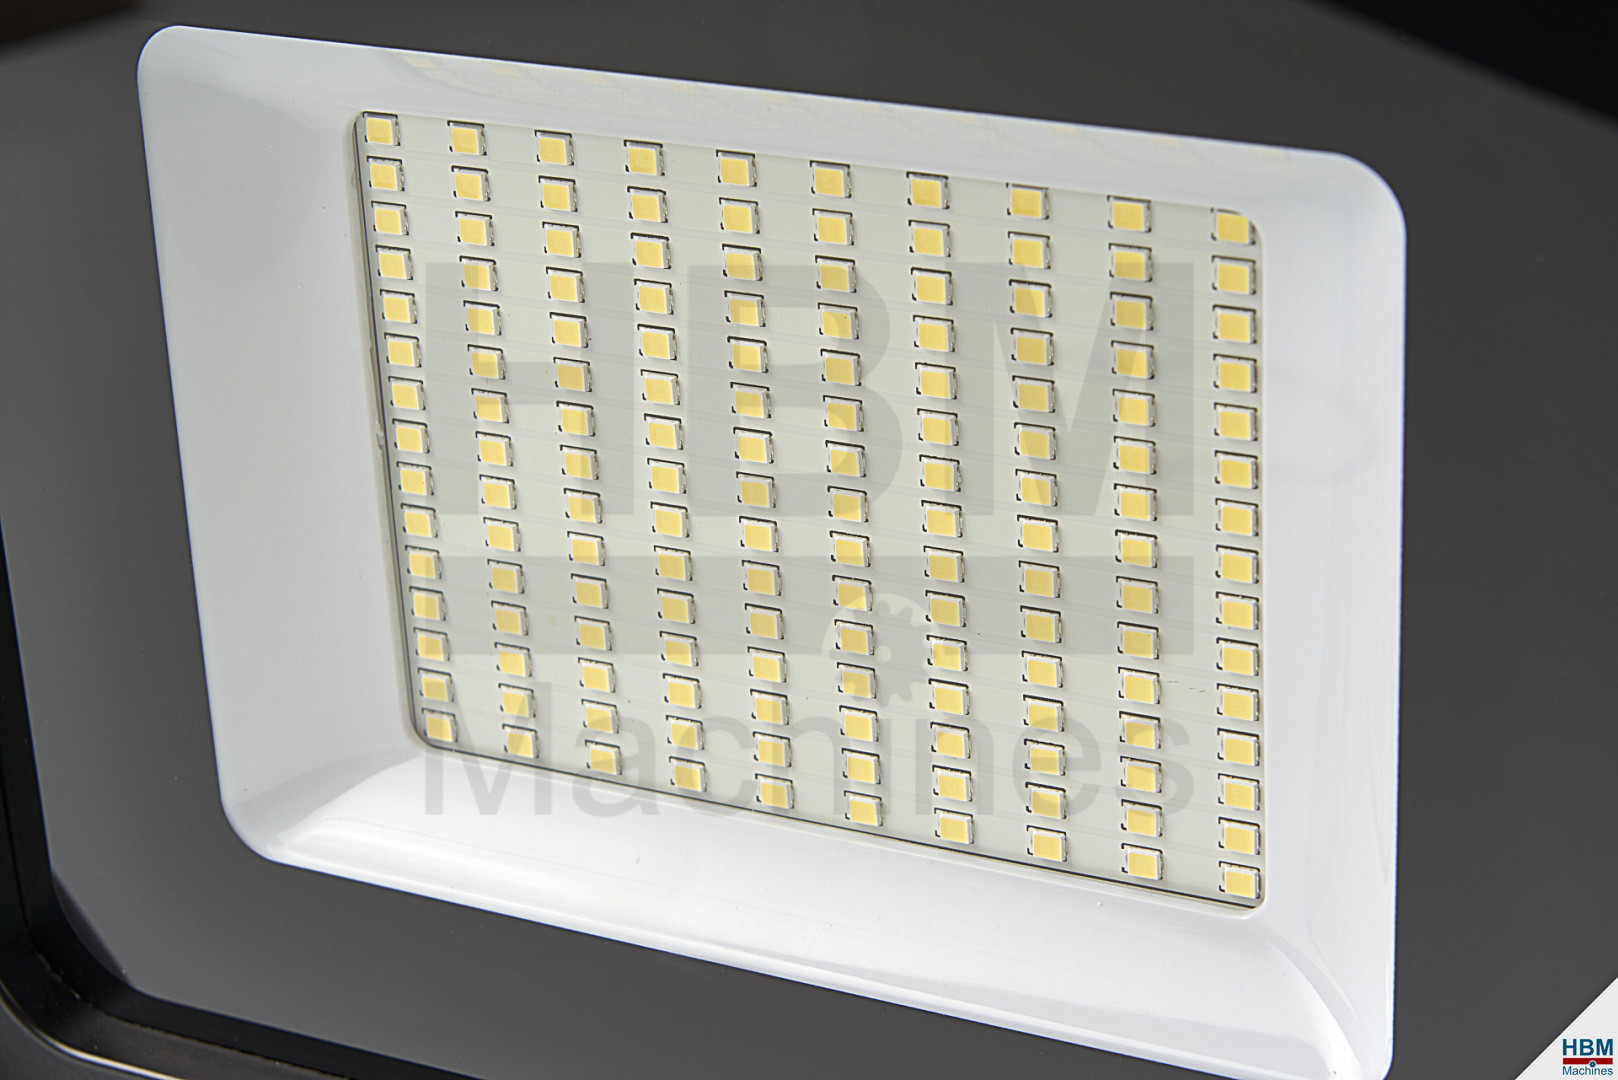 HBM LED-Baustellenlampe 50 Watt - 4000 Lumen, Energieeffizient mit